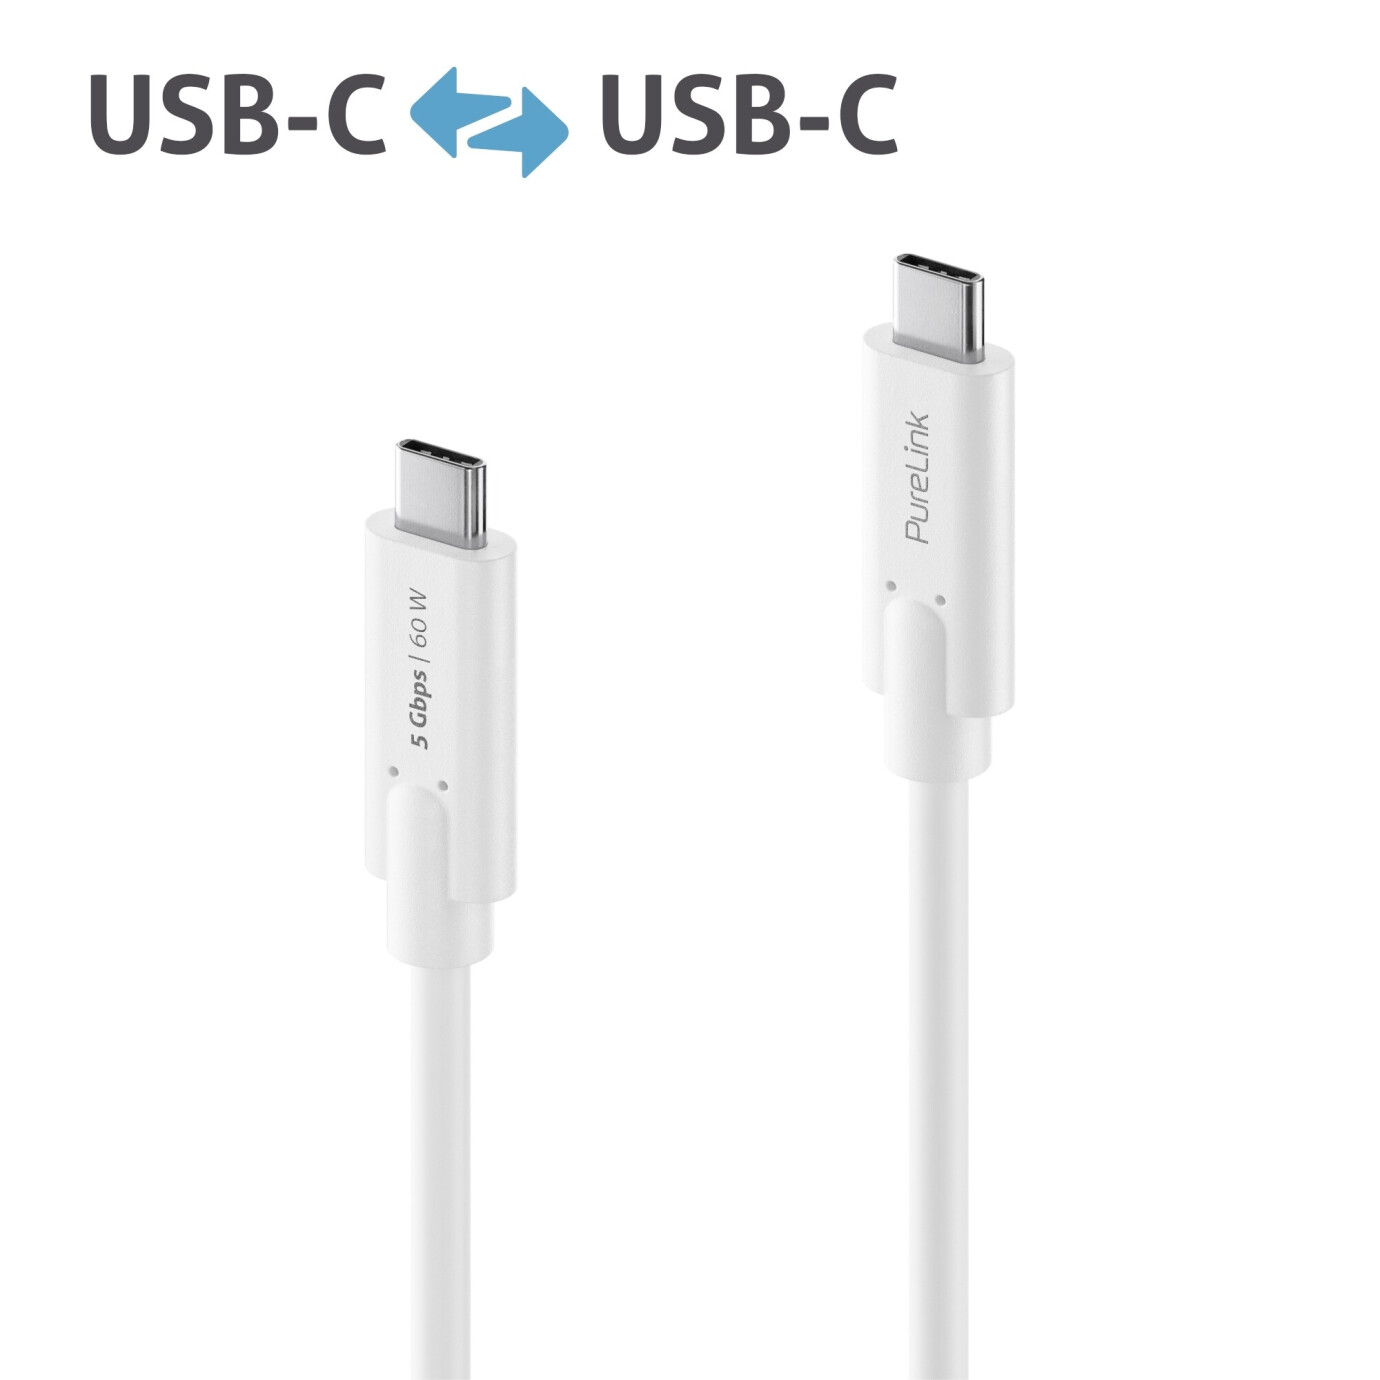 Purelink IS2500-015 USB-C auf USB-C Kabel 1,5m weiß